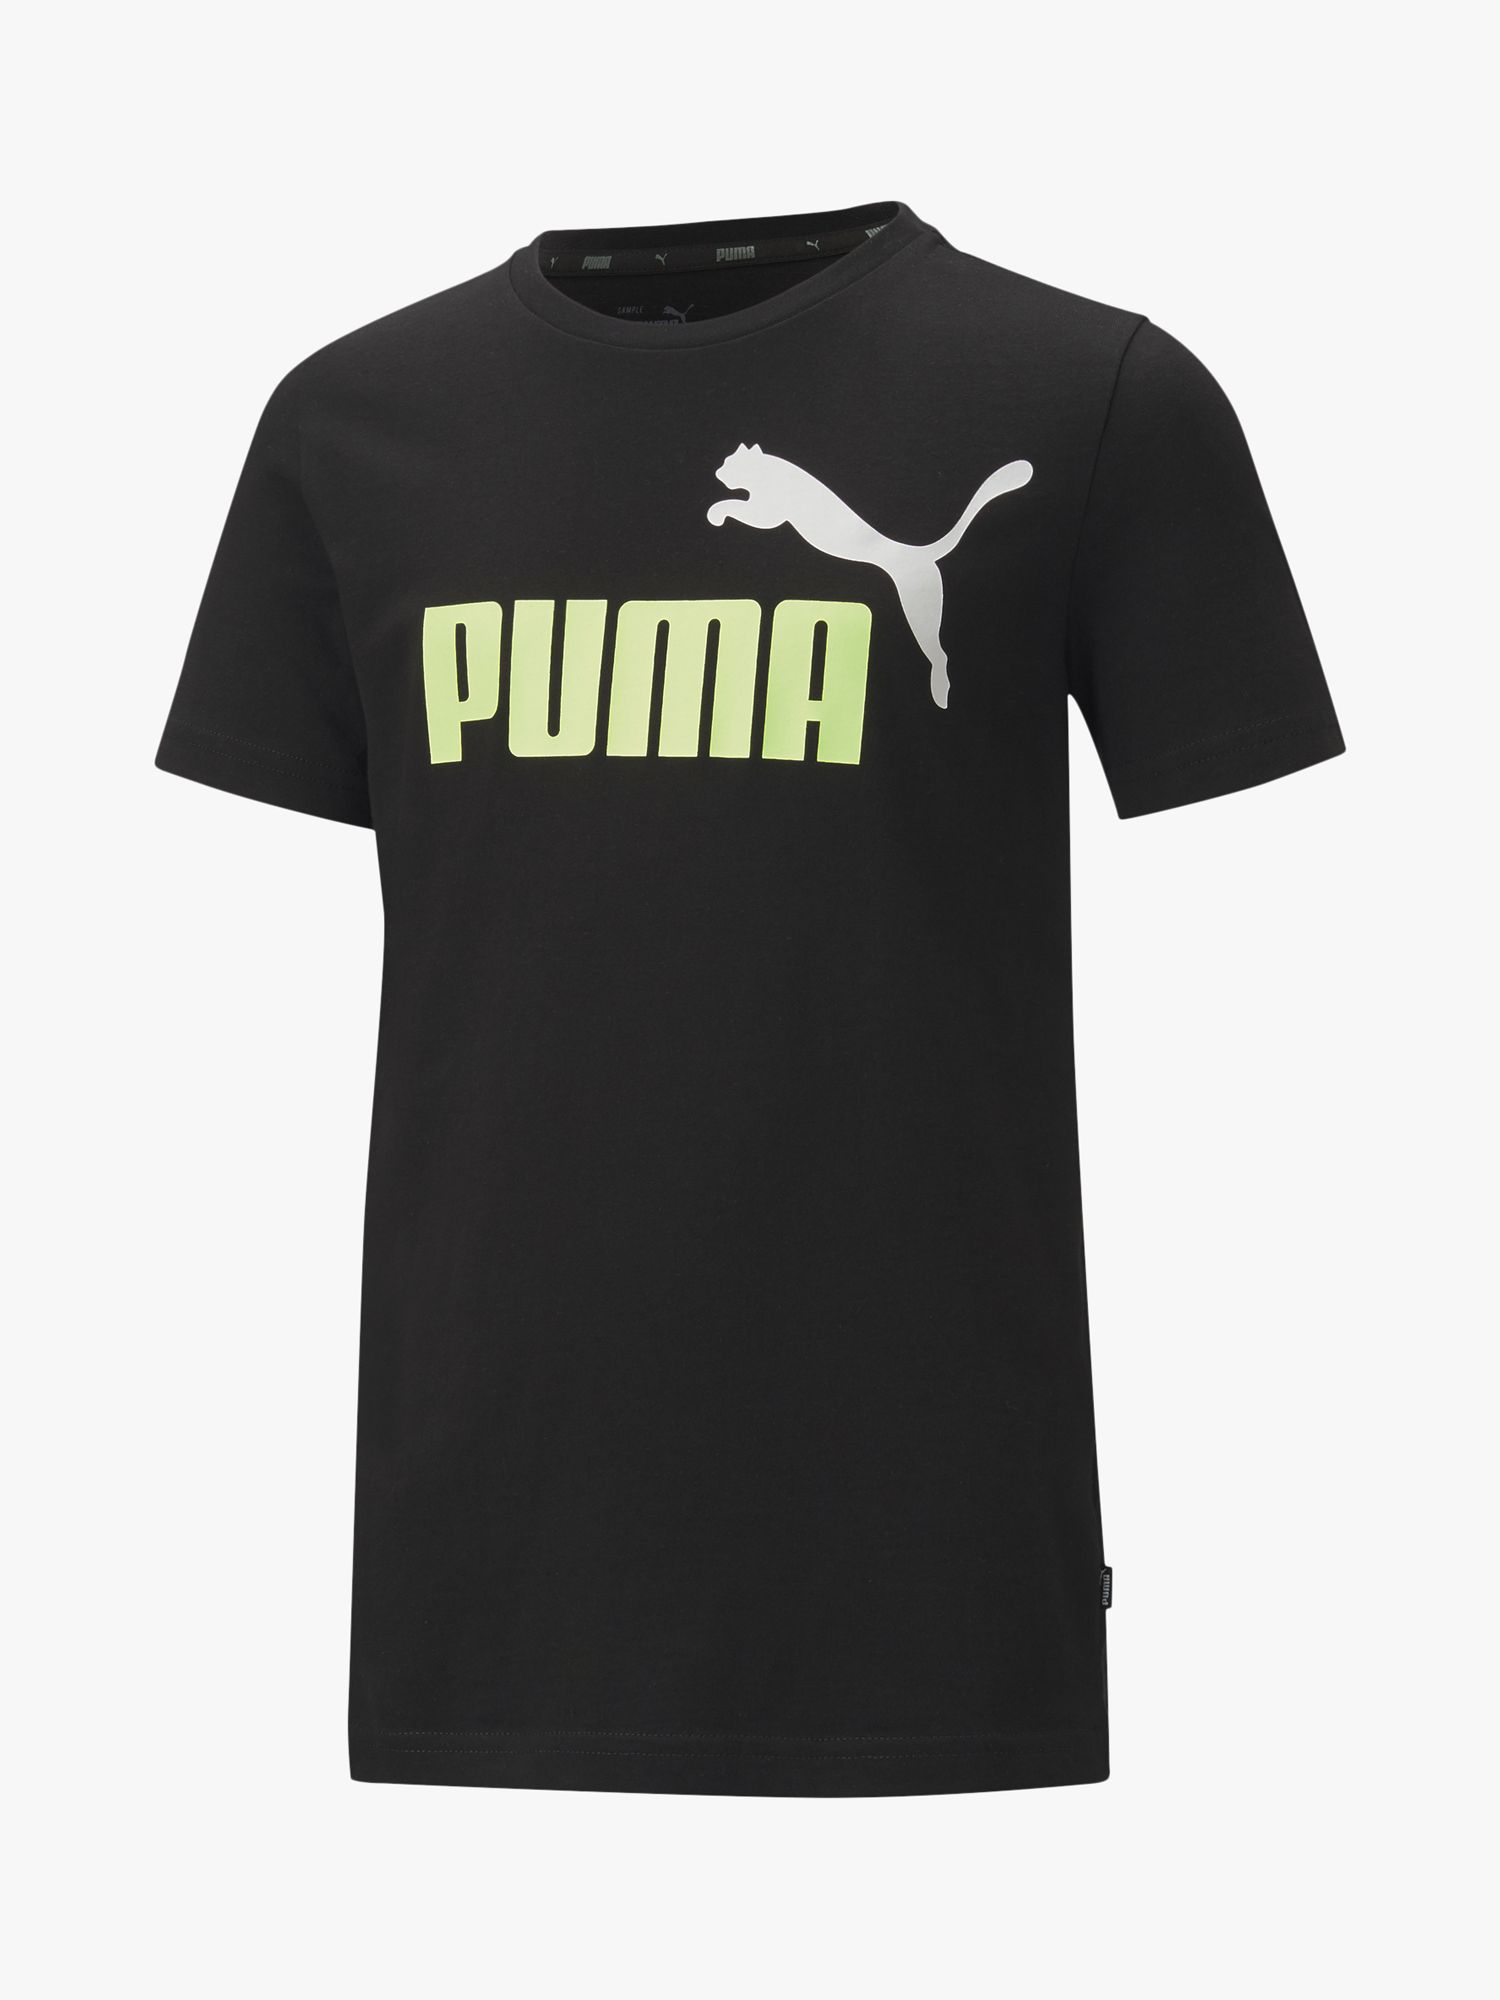 Image of PUMA Boys Essential Logo TShirt BlackMulti